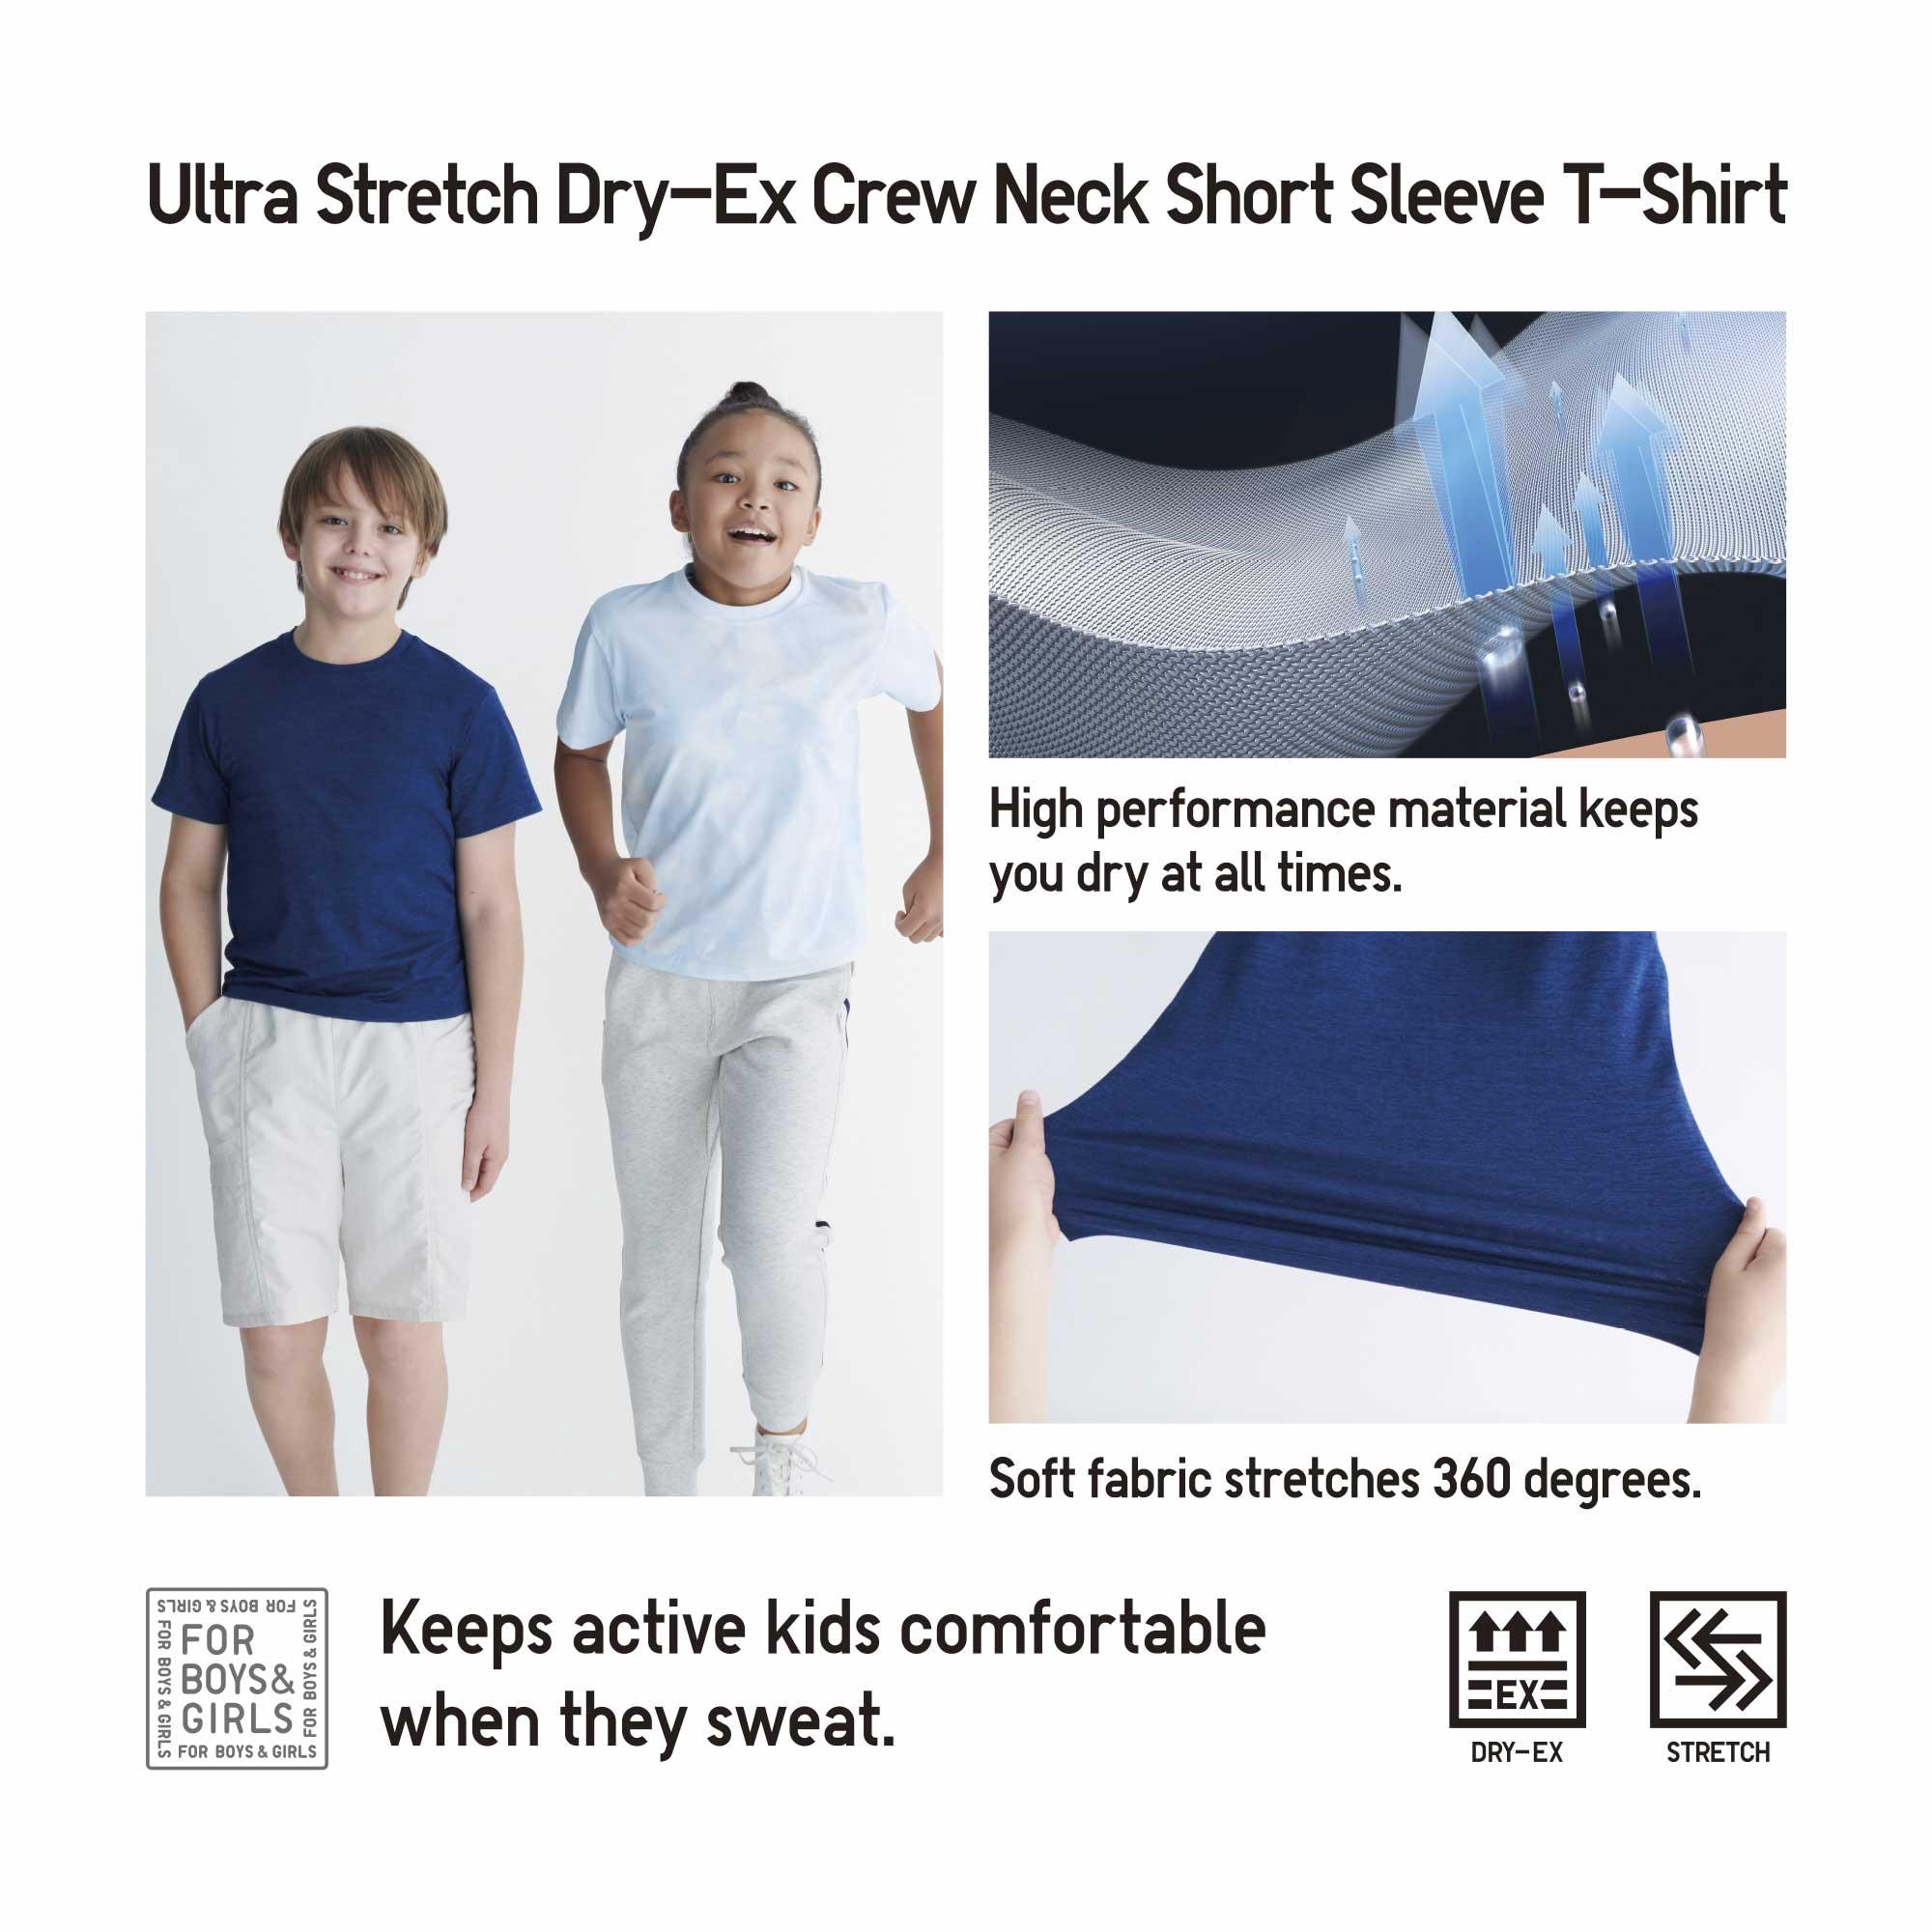 EXTRA STRETCH DRY-EX CREW NECK T-SHIRT